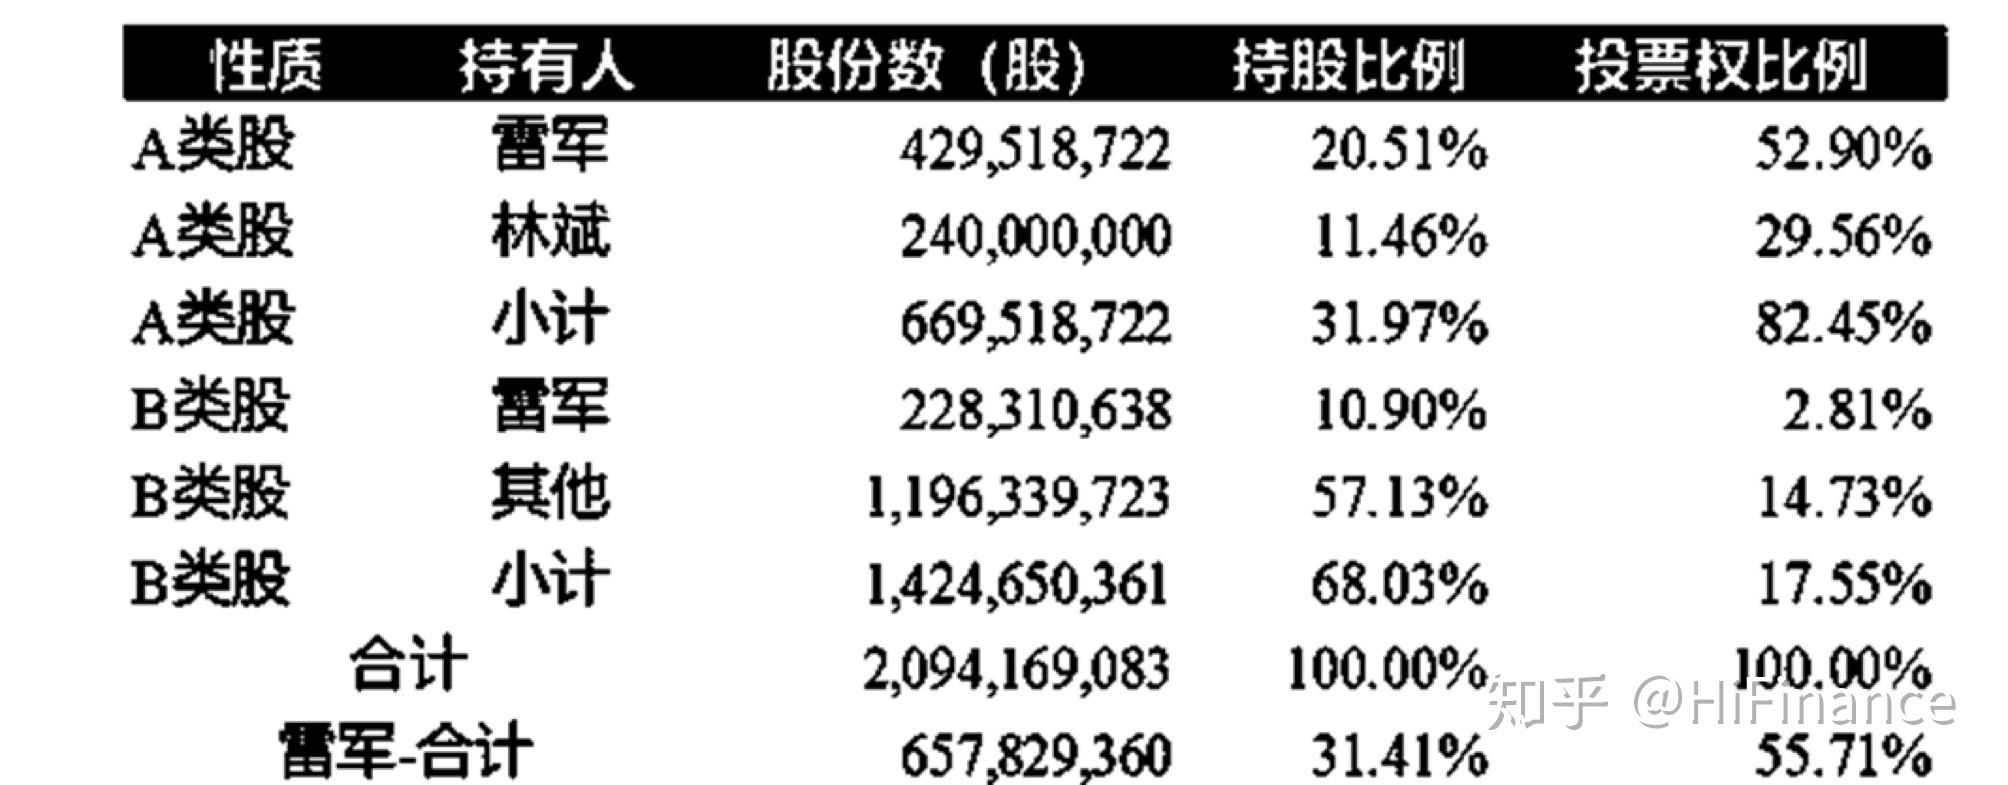 壹网壹创主要股东及持股比例（2019年底）_行行查_行业研究数据库